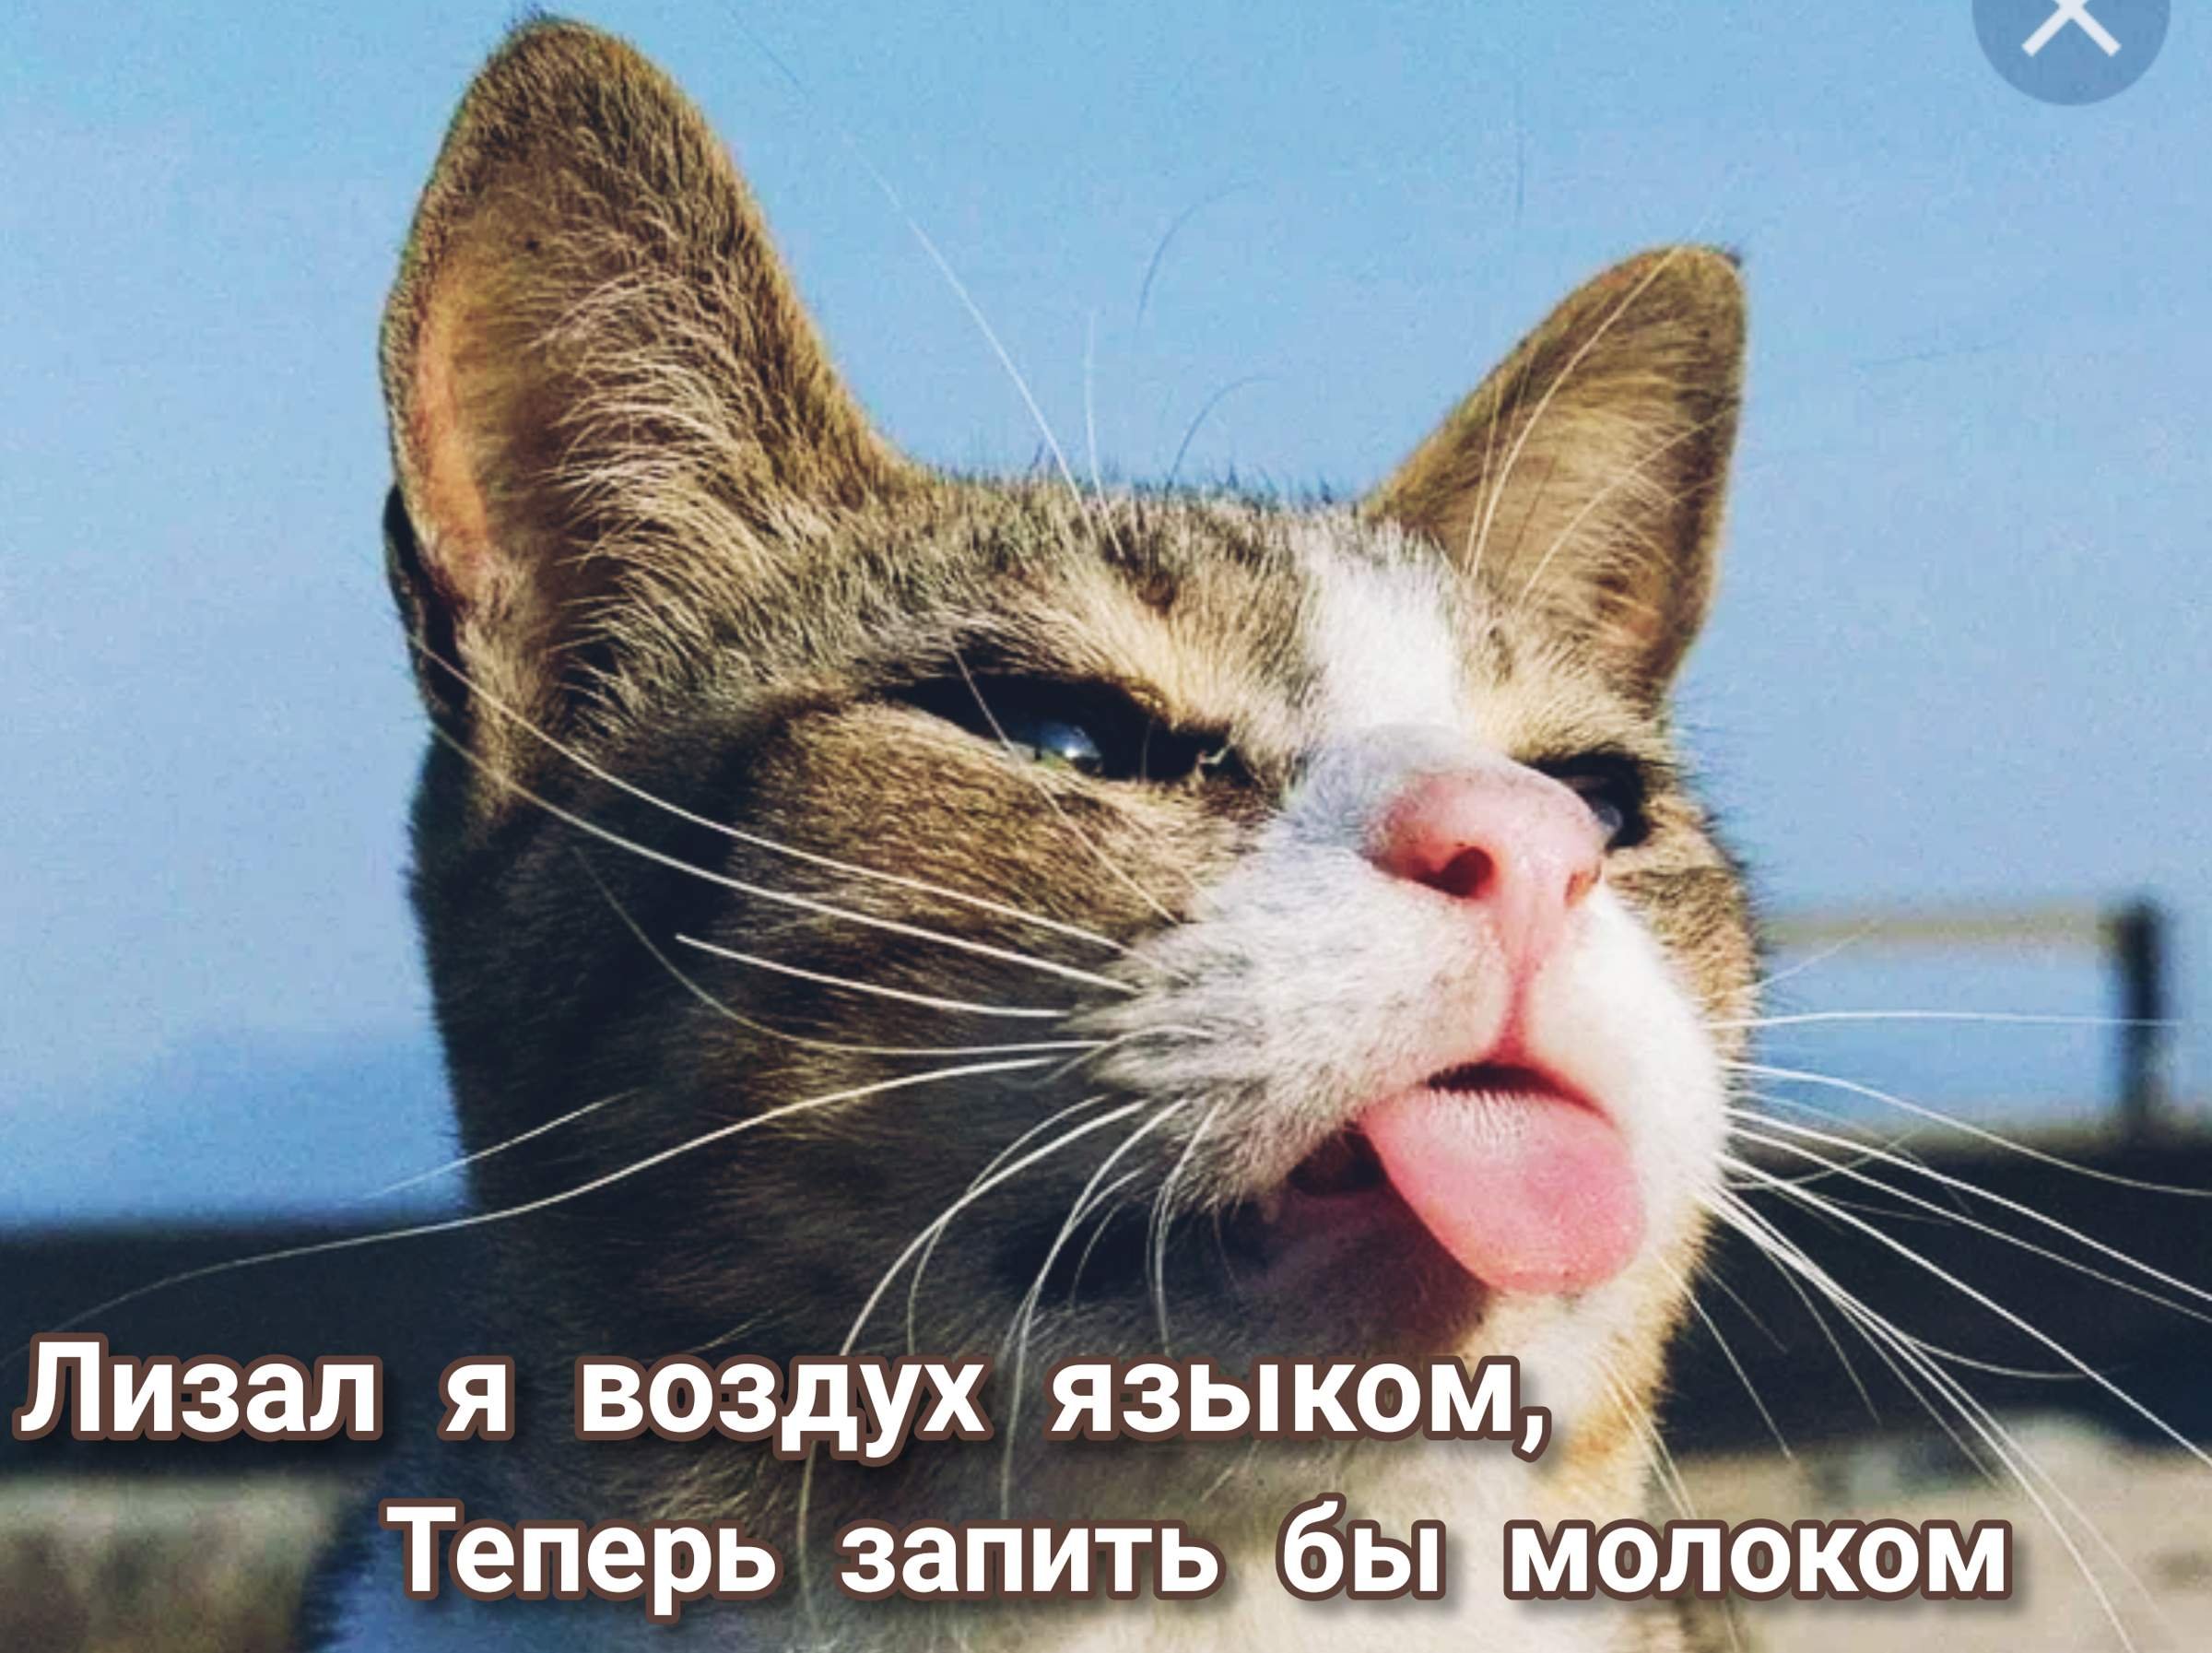 Юмористические коты. Прикольные коты. Смешной кот. Радостный кот. Классный кот.